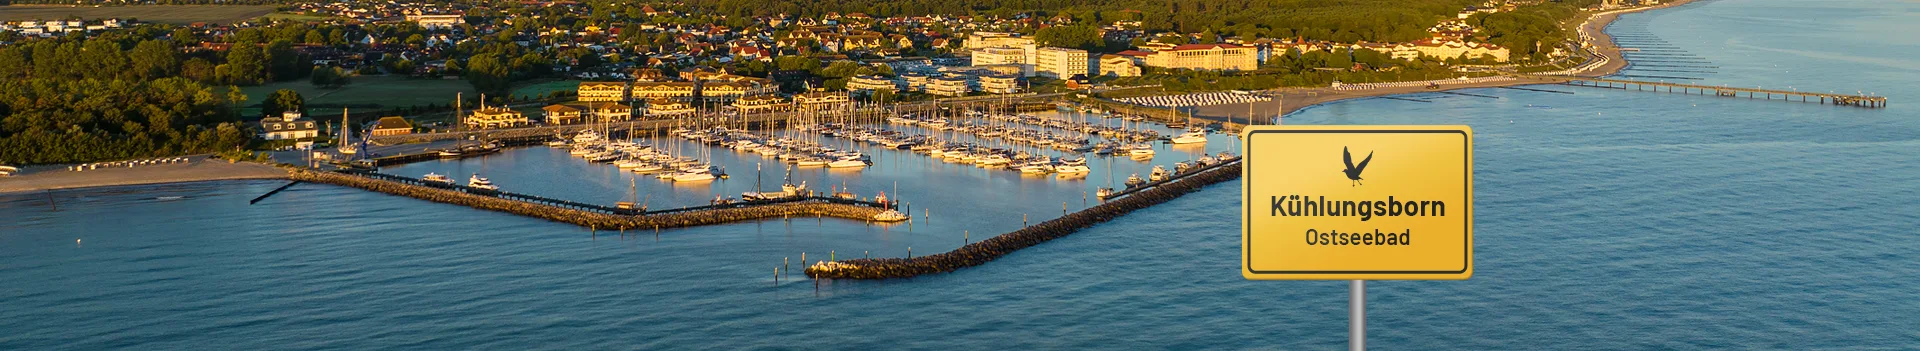 Yachthafen Kühlungsborn, Blick auf die Hafeneinfahrt aus der Vogelperspektive